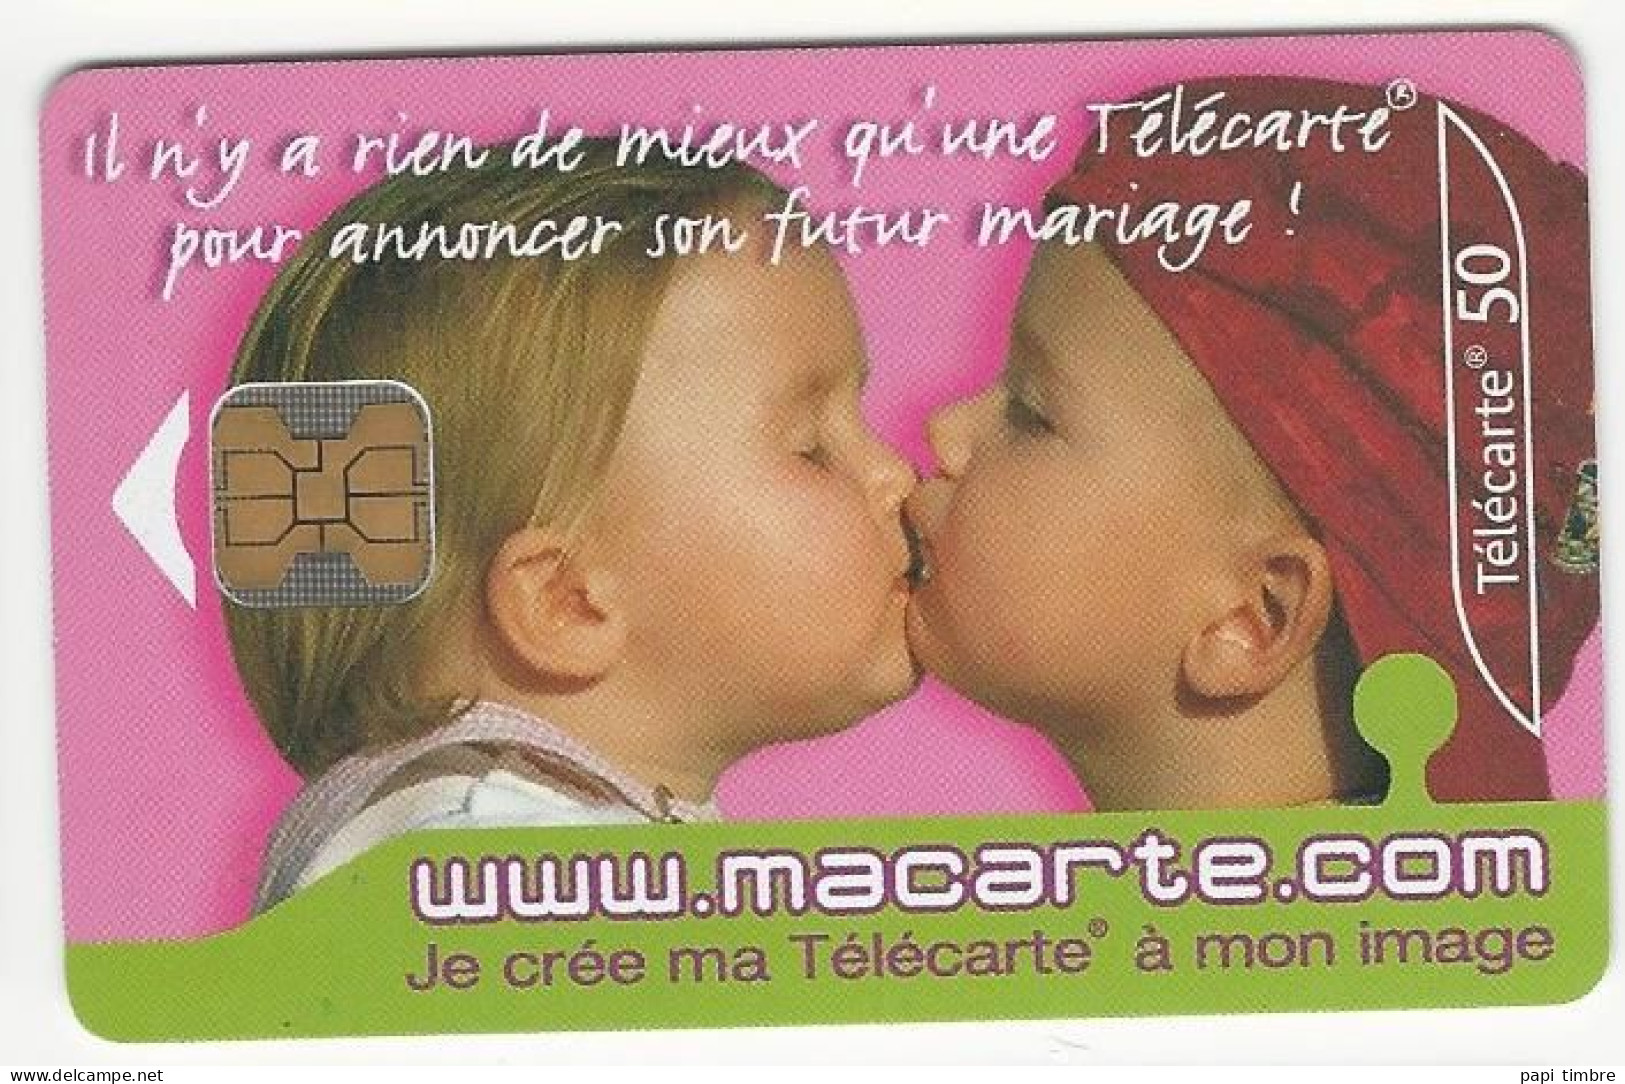 Télécarte "macarte.com" Je Crée Ma Télécarte à Mon Image - 50 Unités - Personen